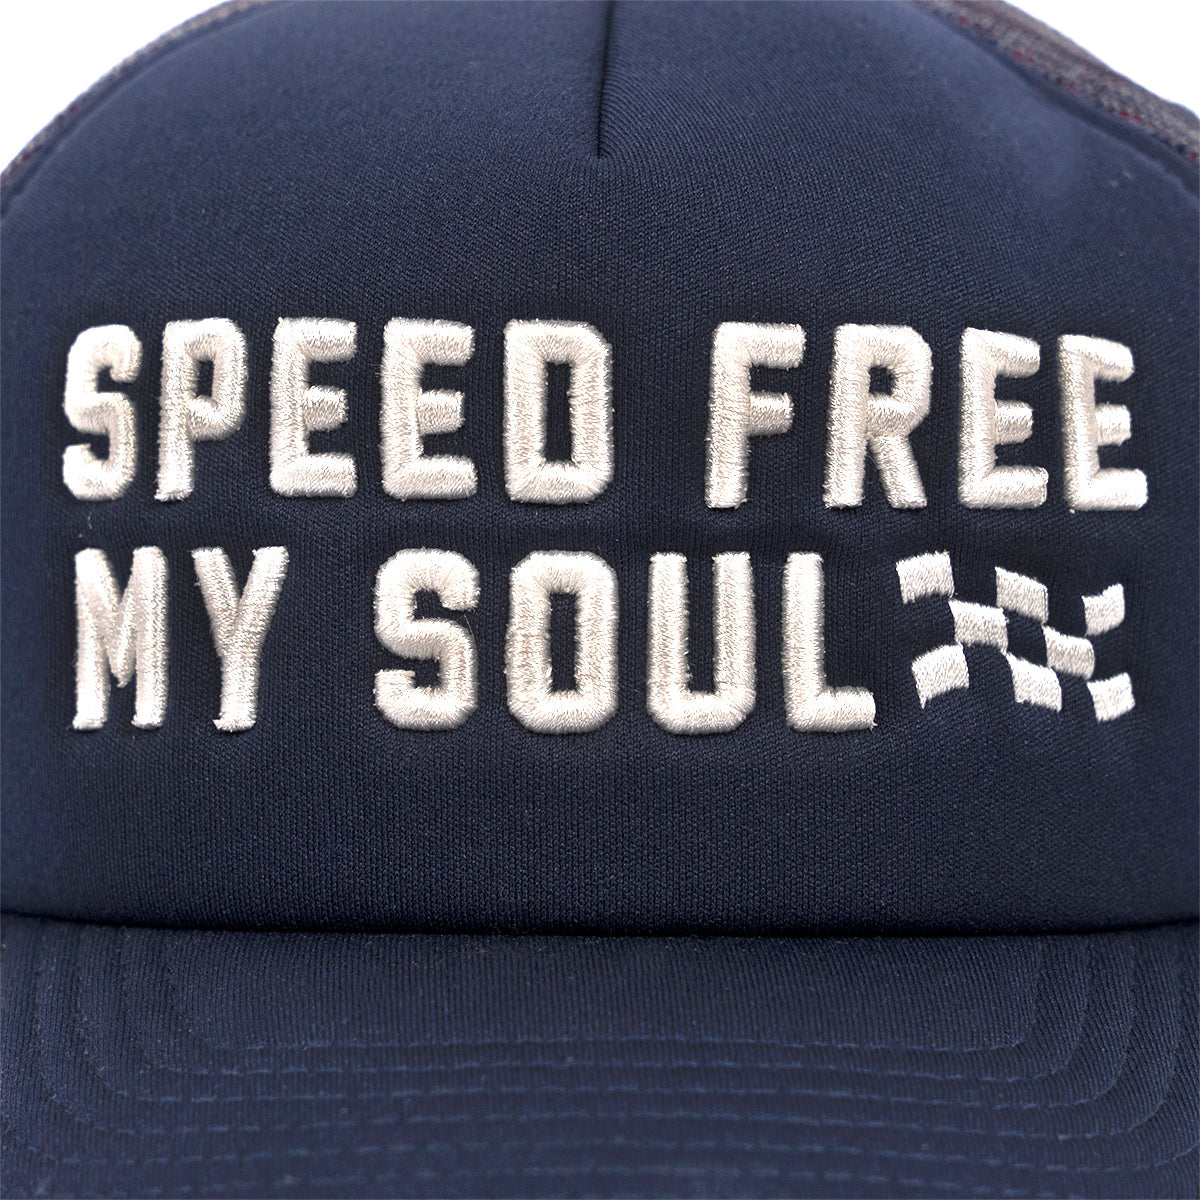 Soul Hat